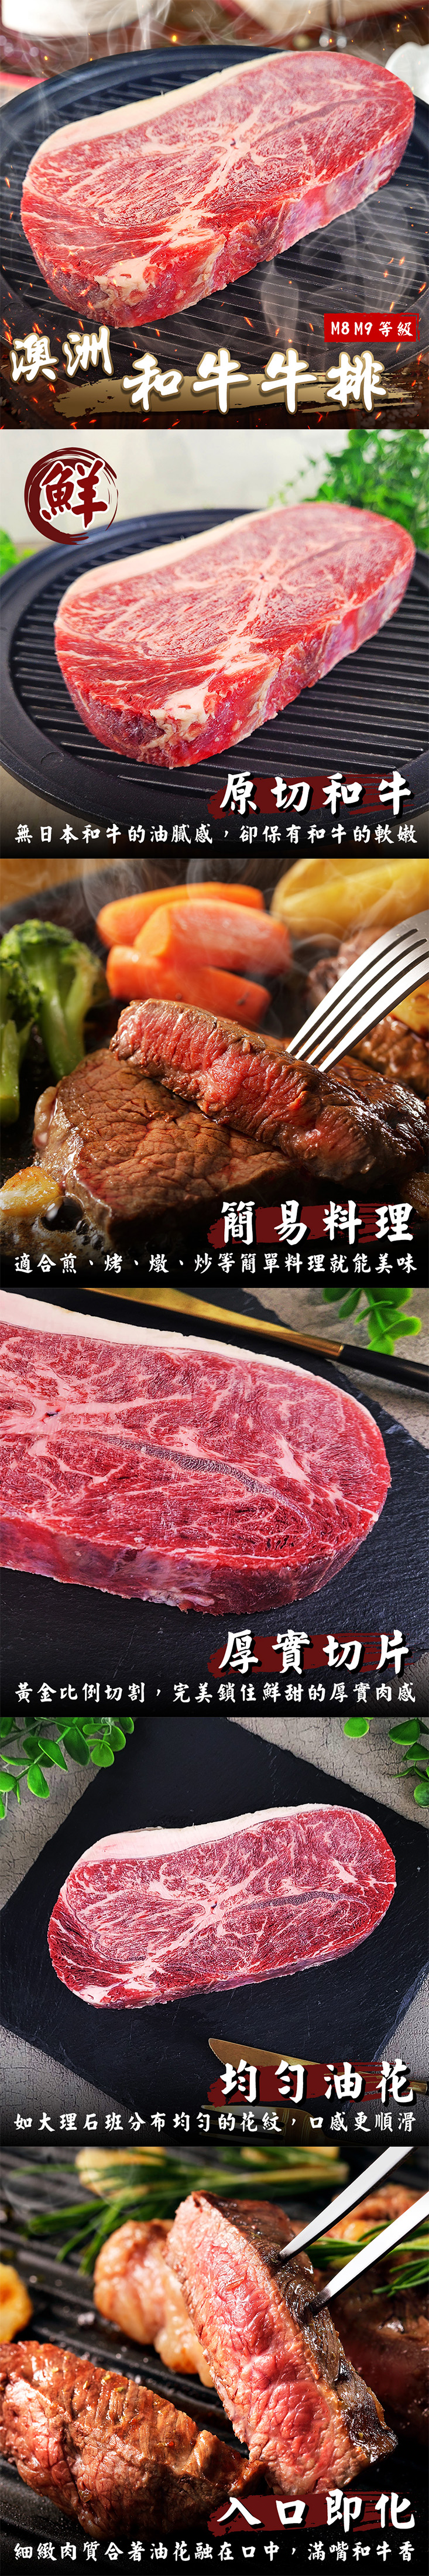 (福利品)【鮮肉王國】澳洲日本種M8-9+和牛牛排